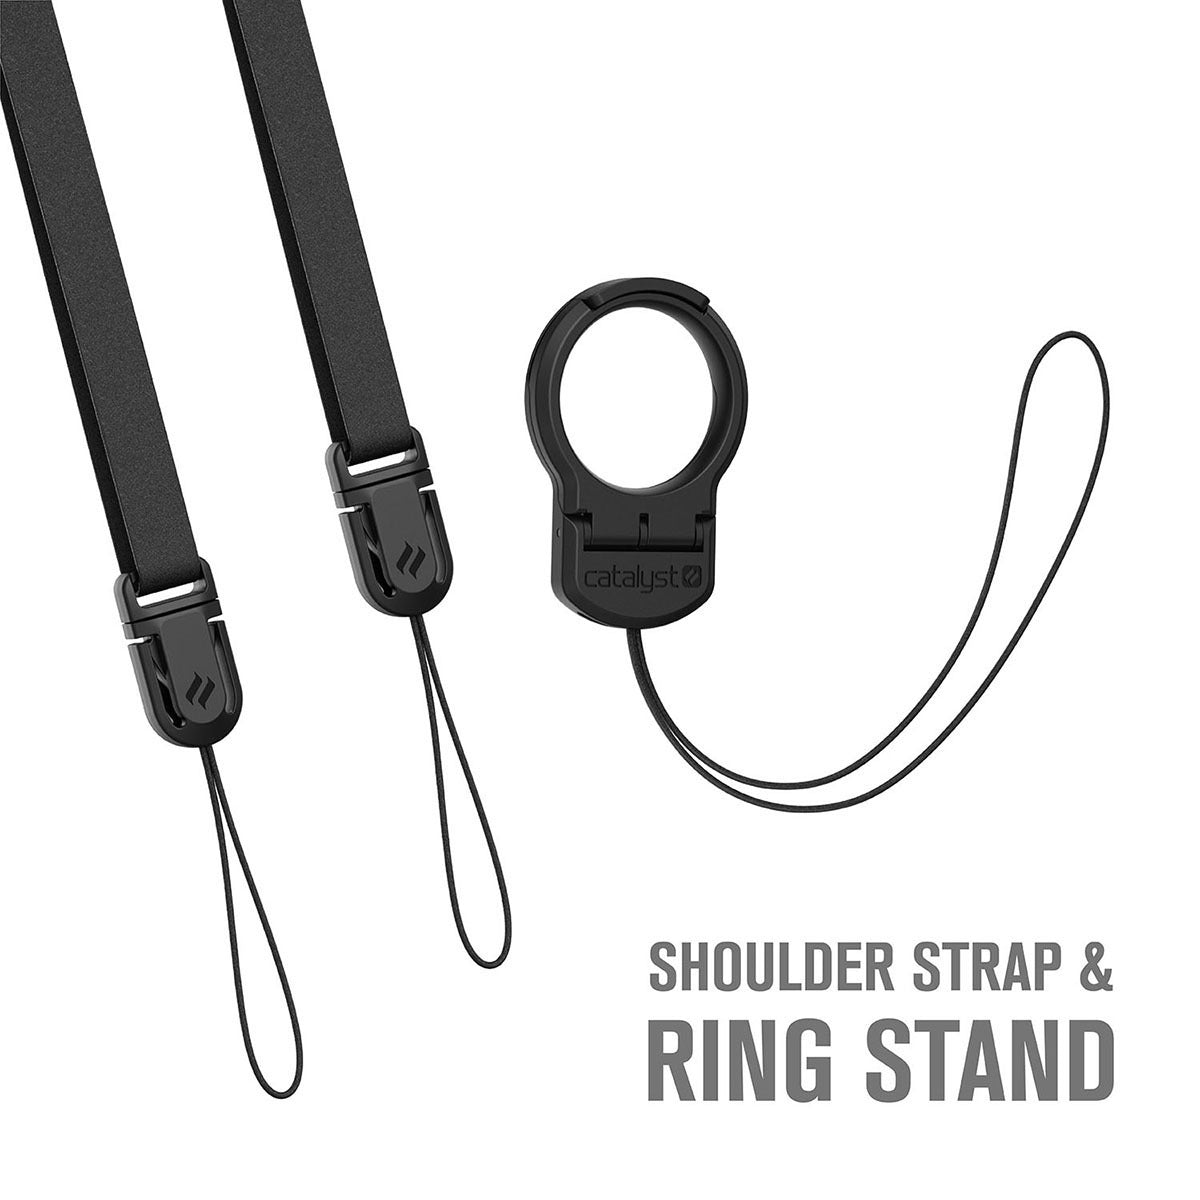 Shoulder Strap & Ring Stand